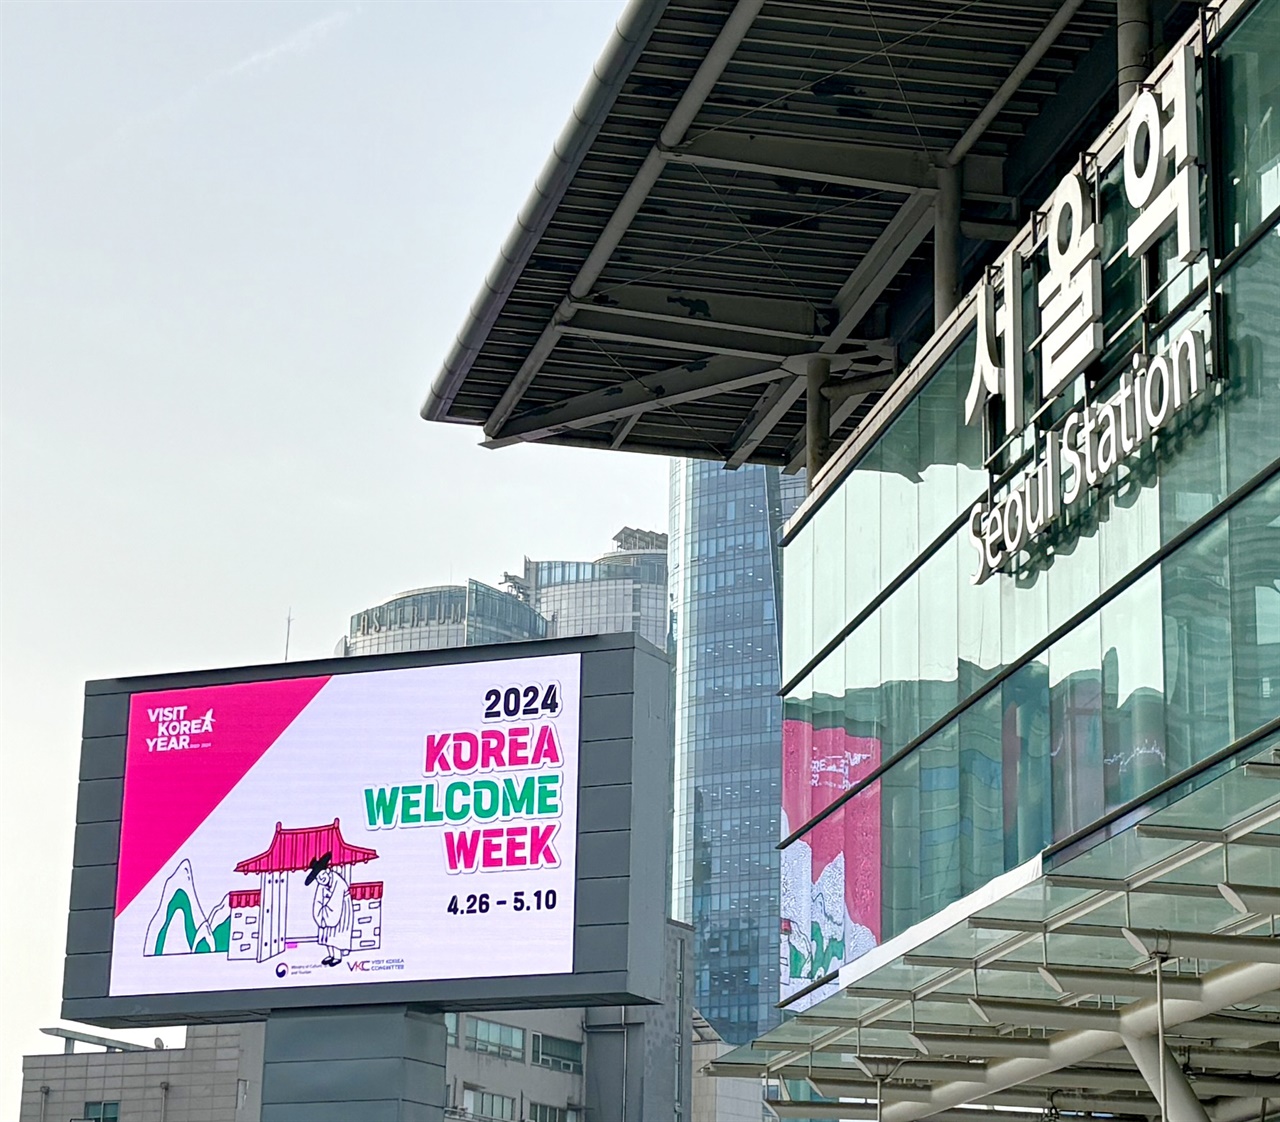 서울역 광고매체에 한국방문의 해 상반기 환영주간 홍보 영상이 송출되고 있다.